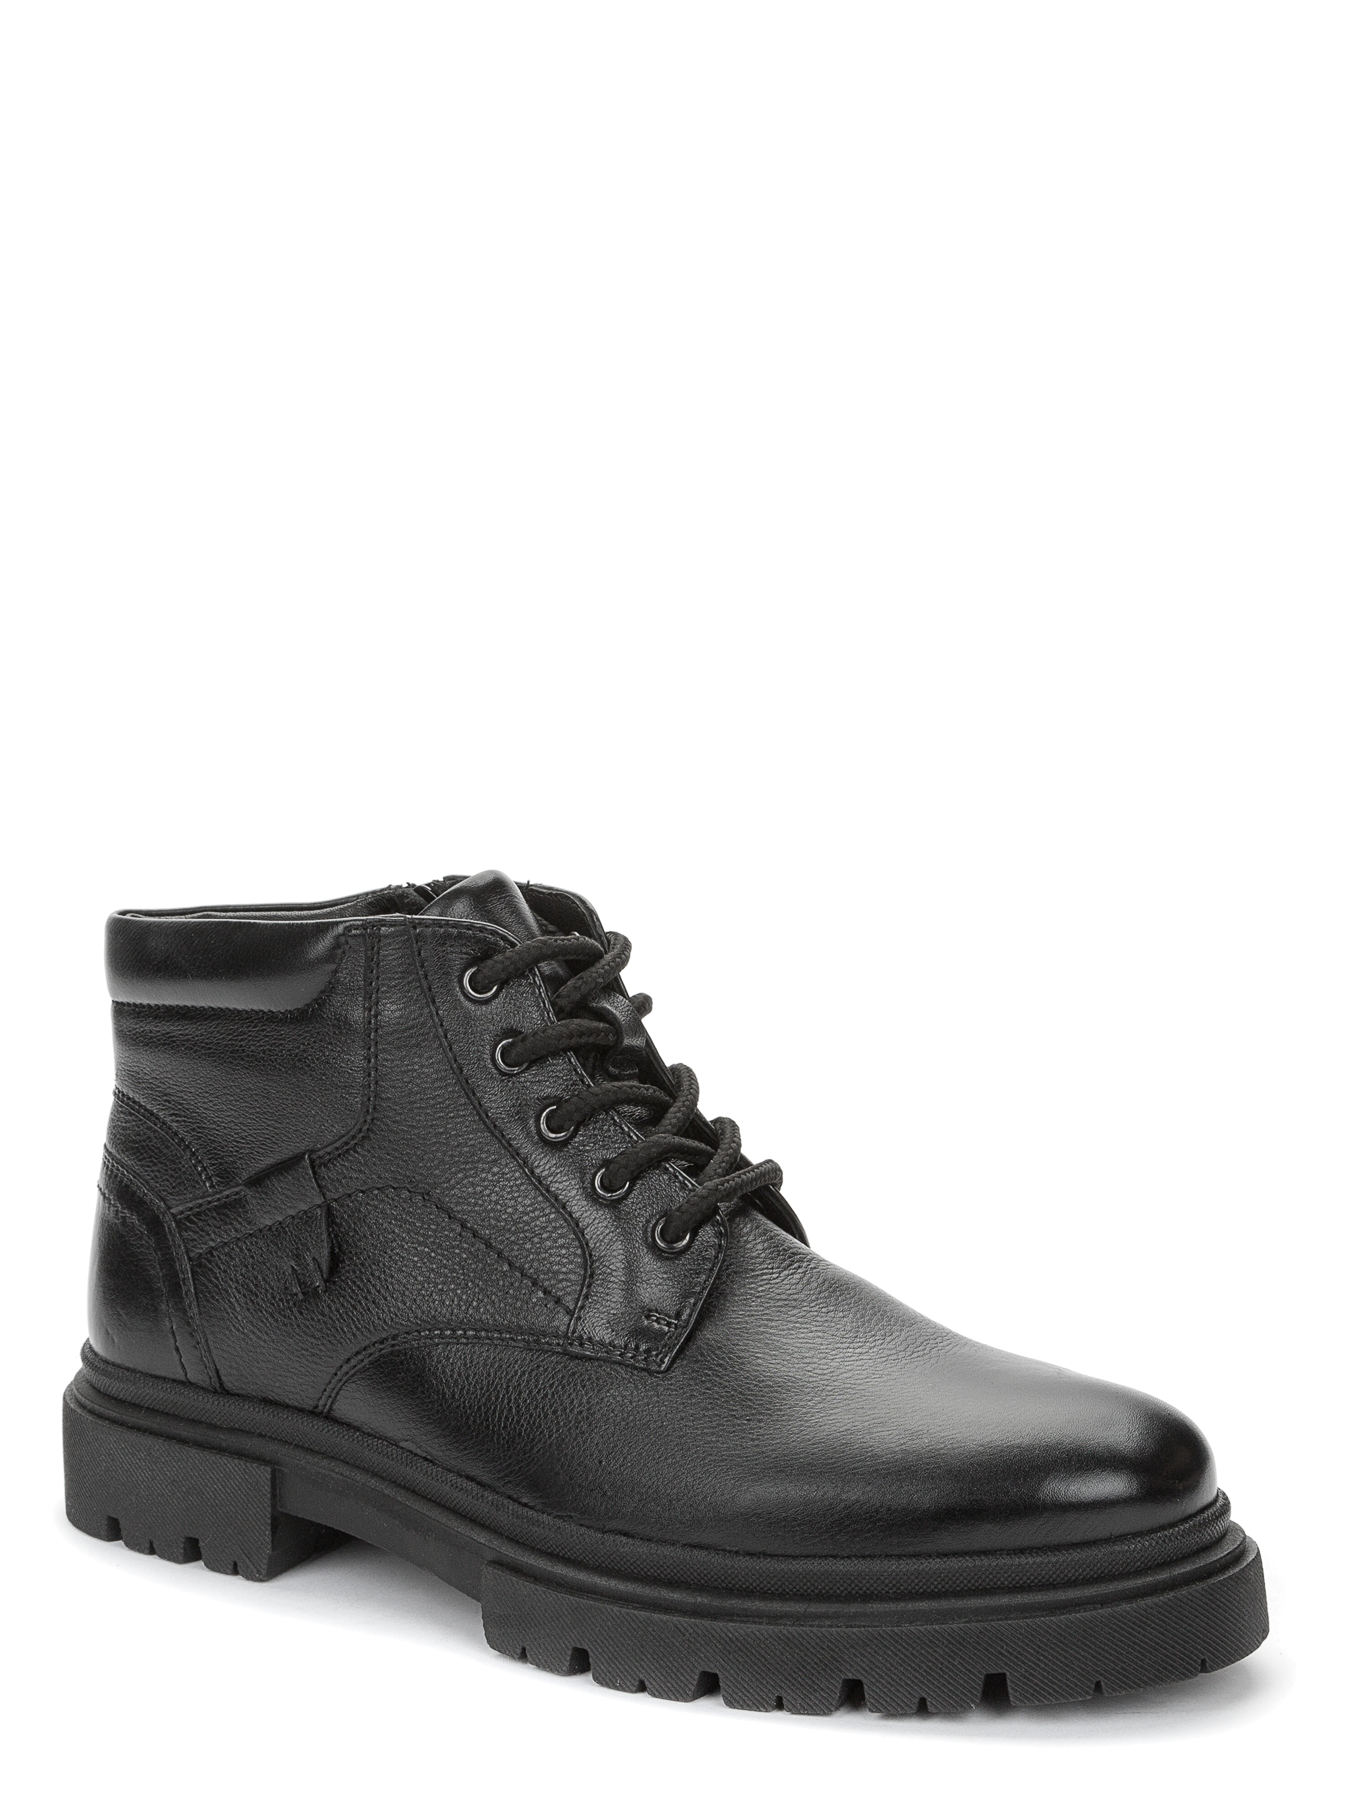 Ботинки мужские Keddo 738010-05-01 черные 44 EU